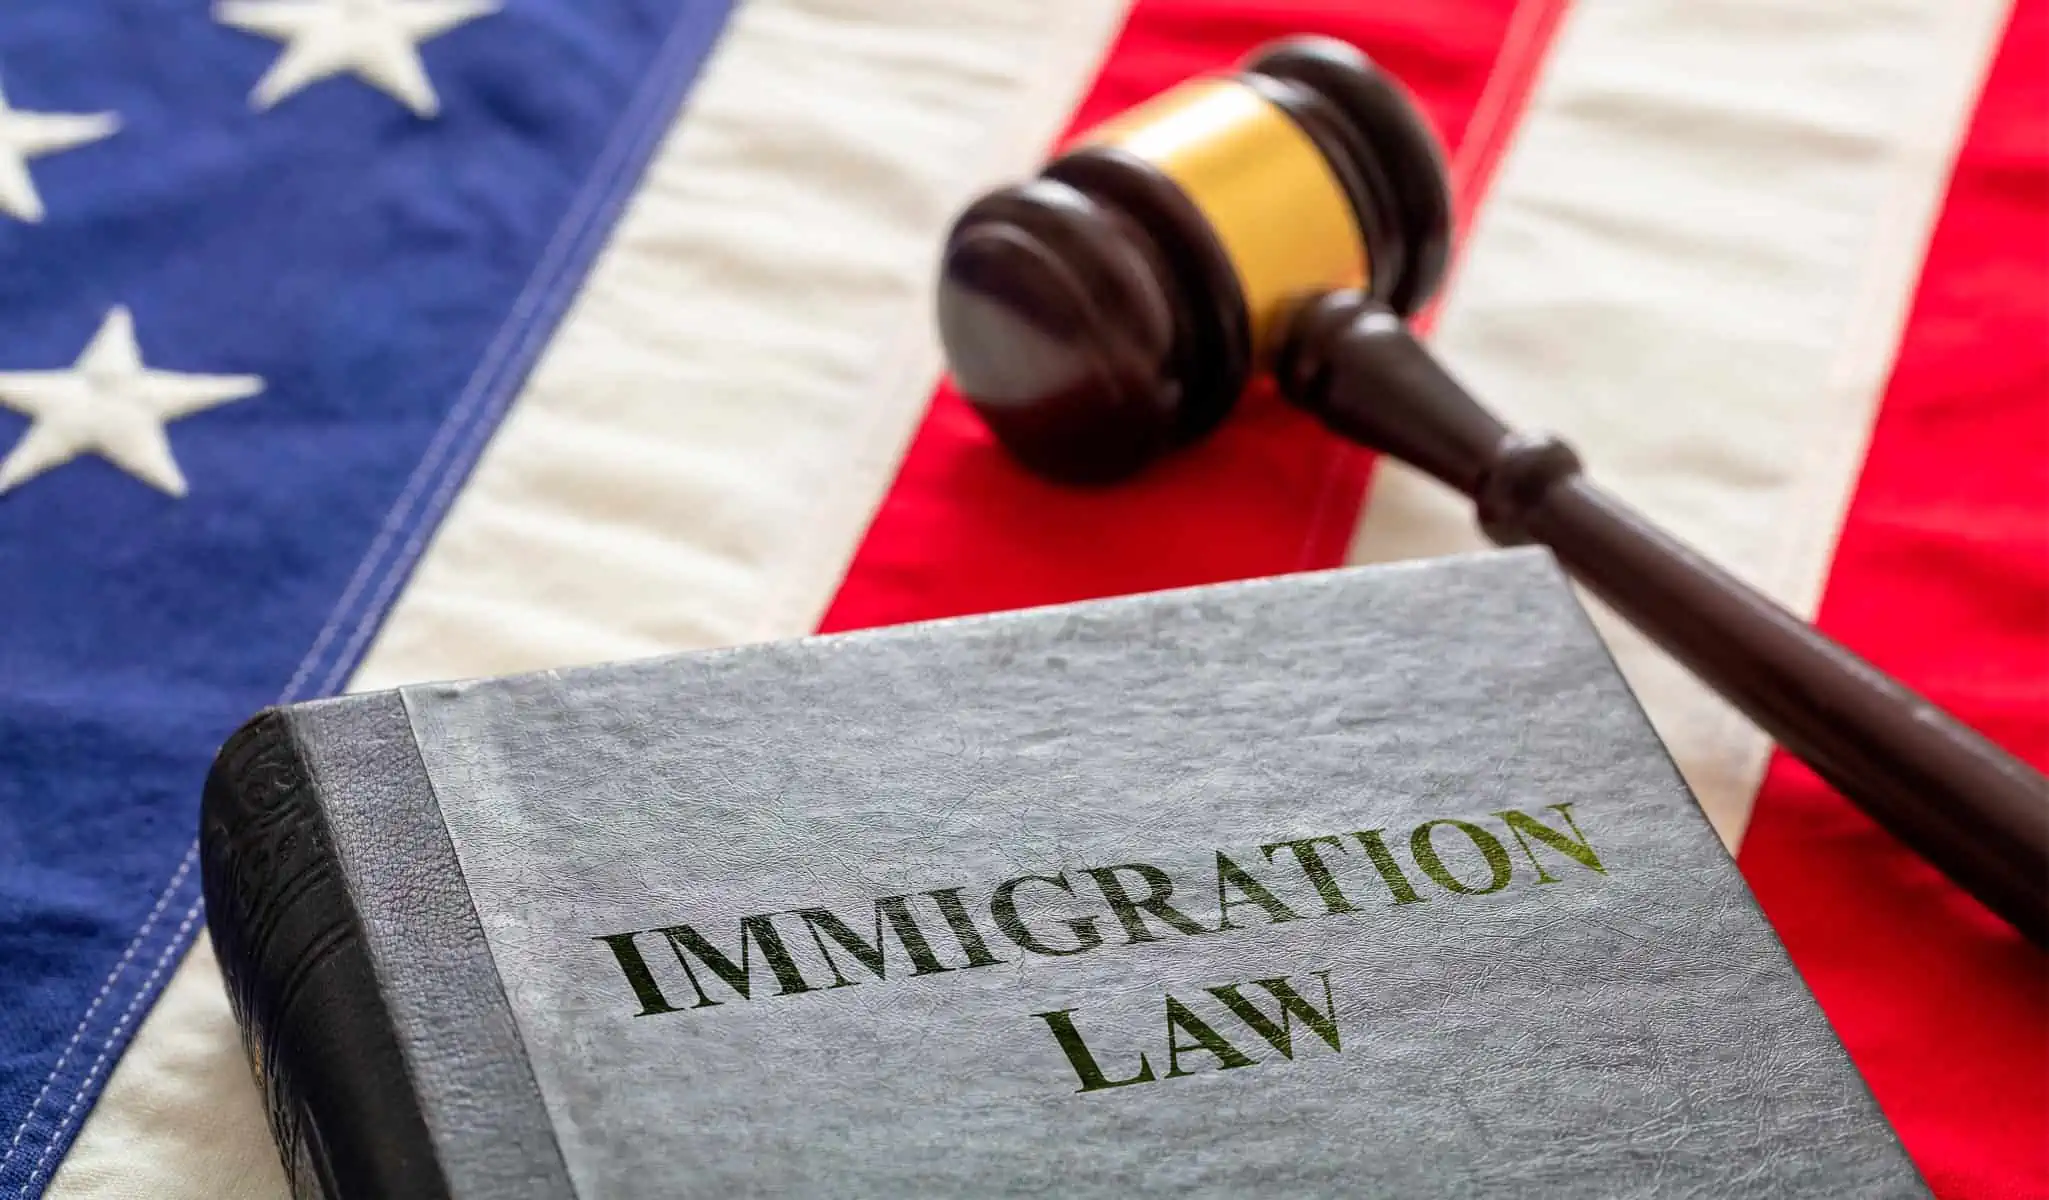 Informan Situación en Florida Luego de Aplicar la Ley Antiinmigrantes